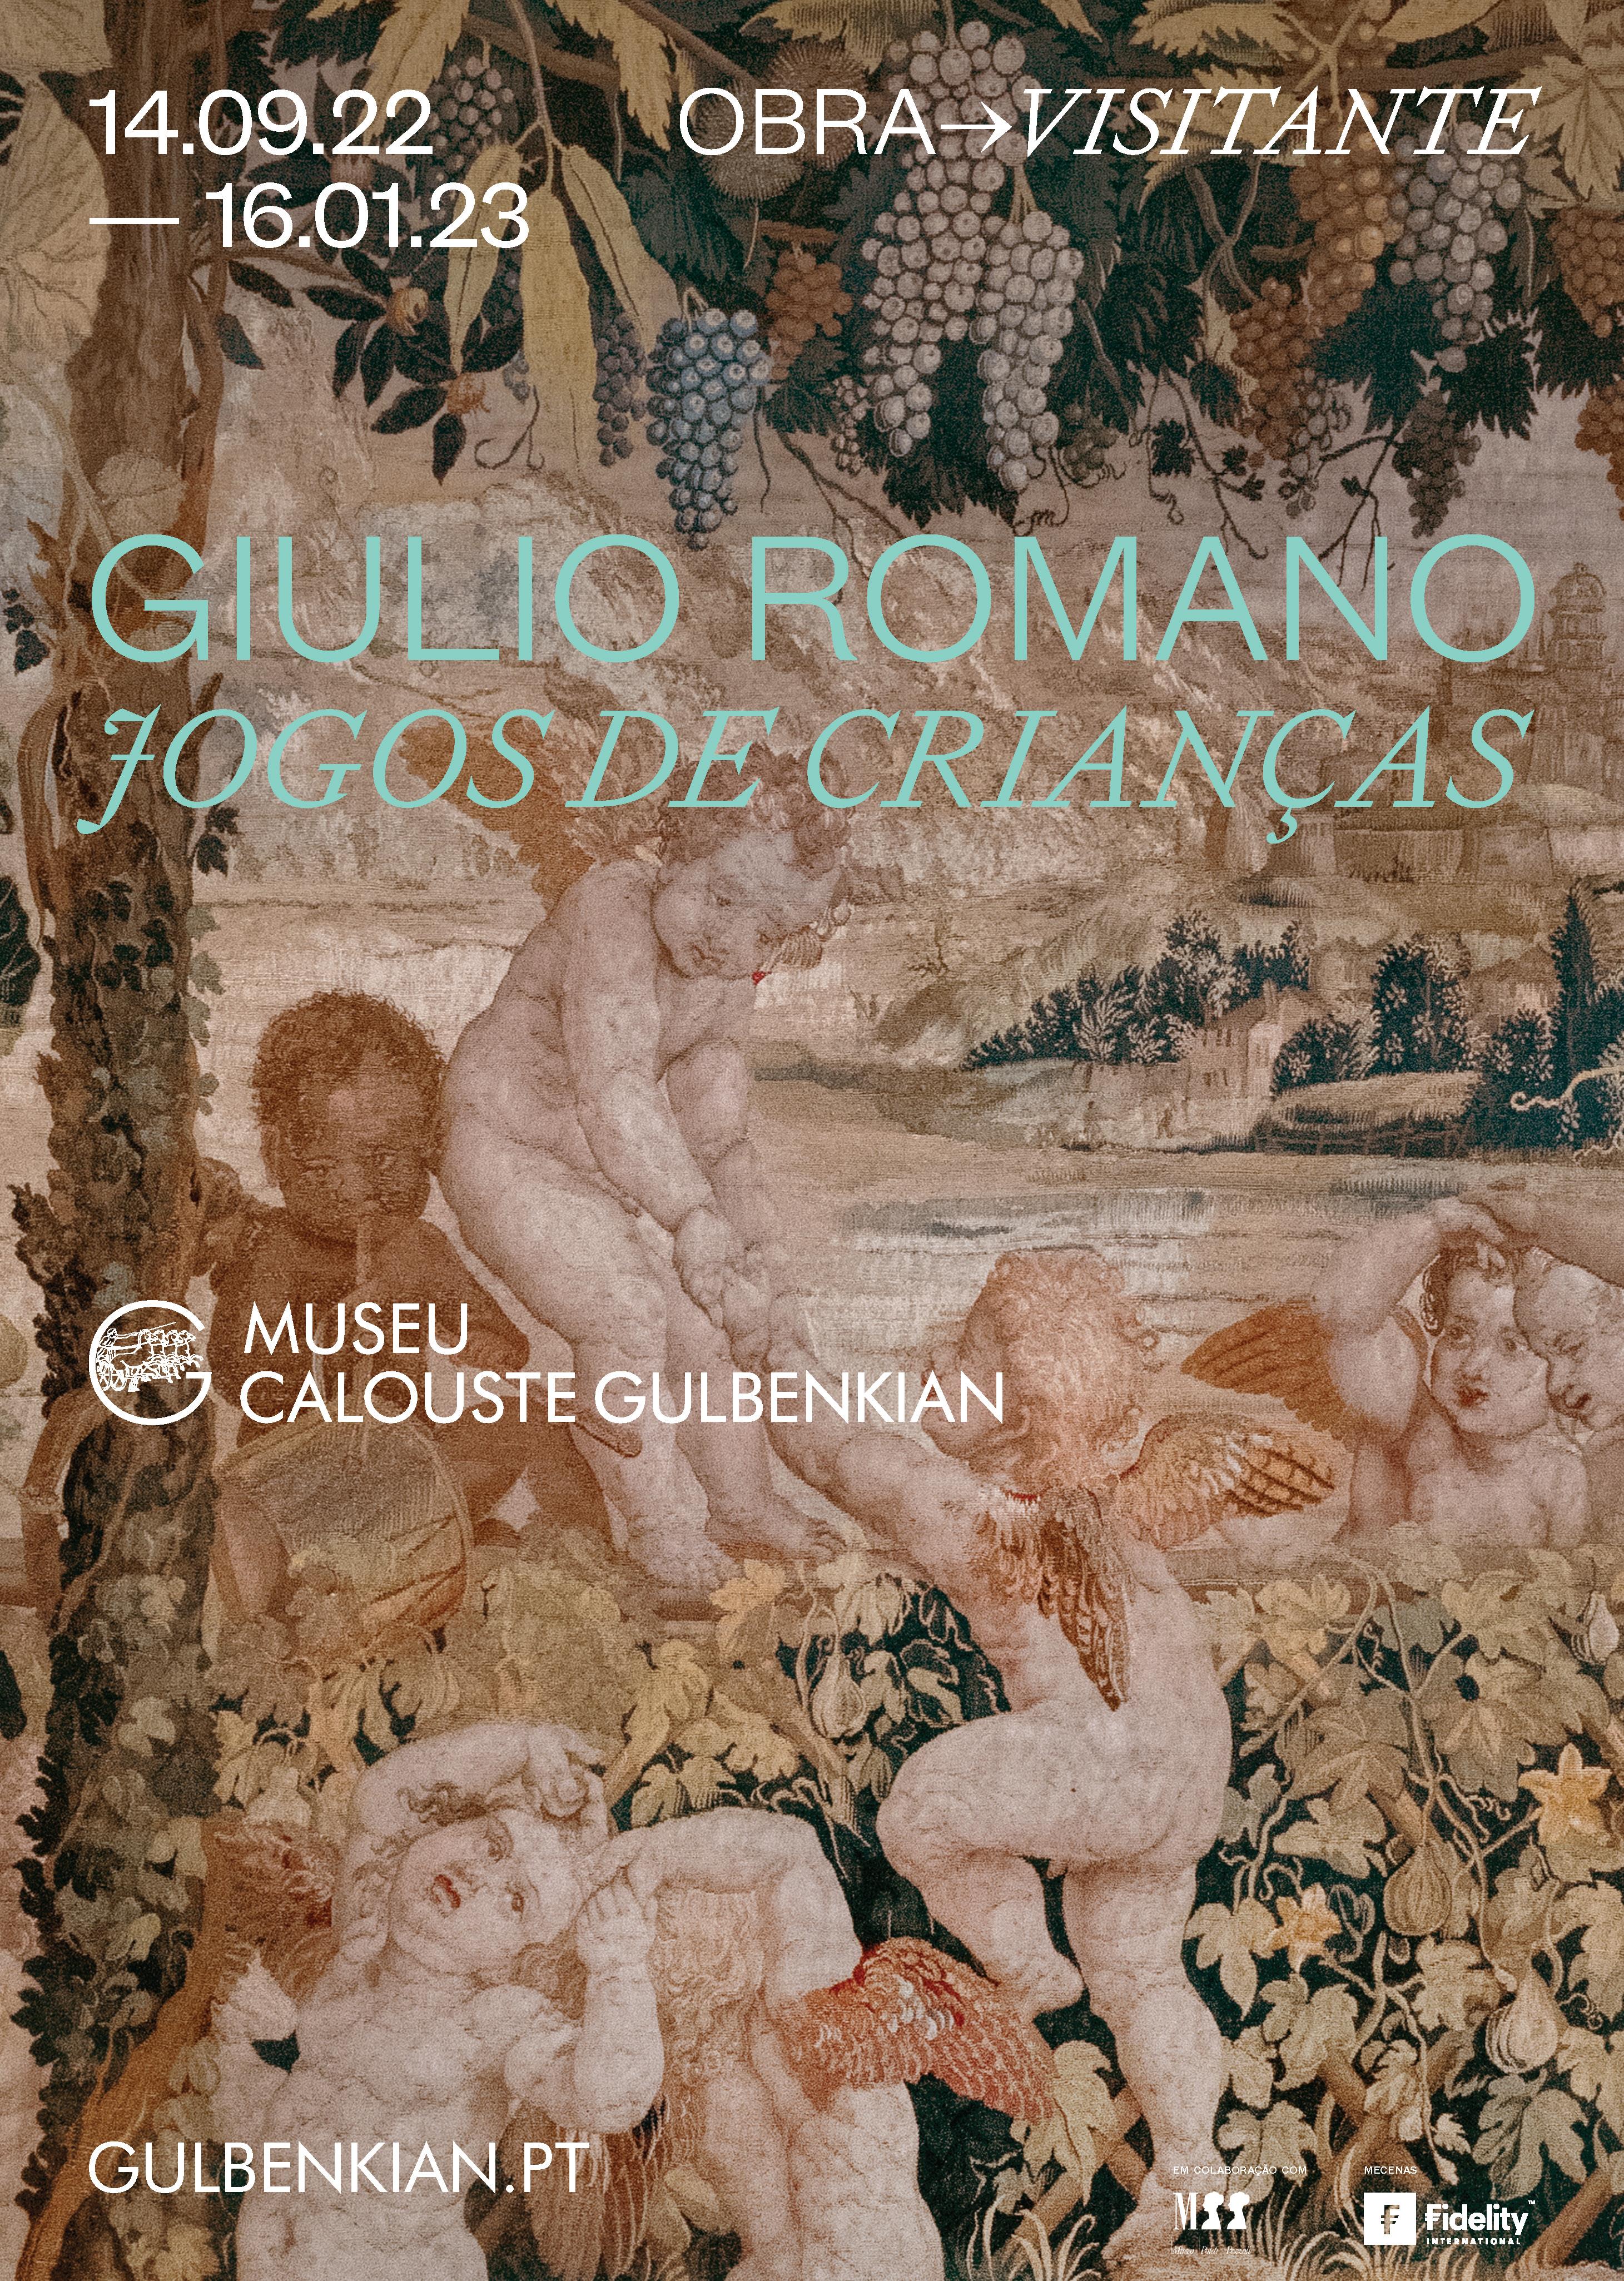 Obra Visitante. Giulio Romano